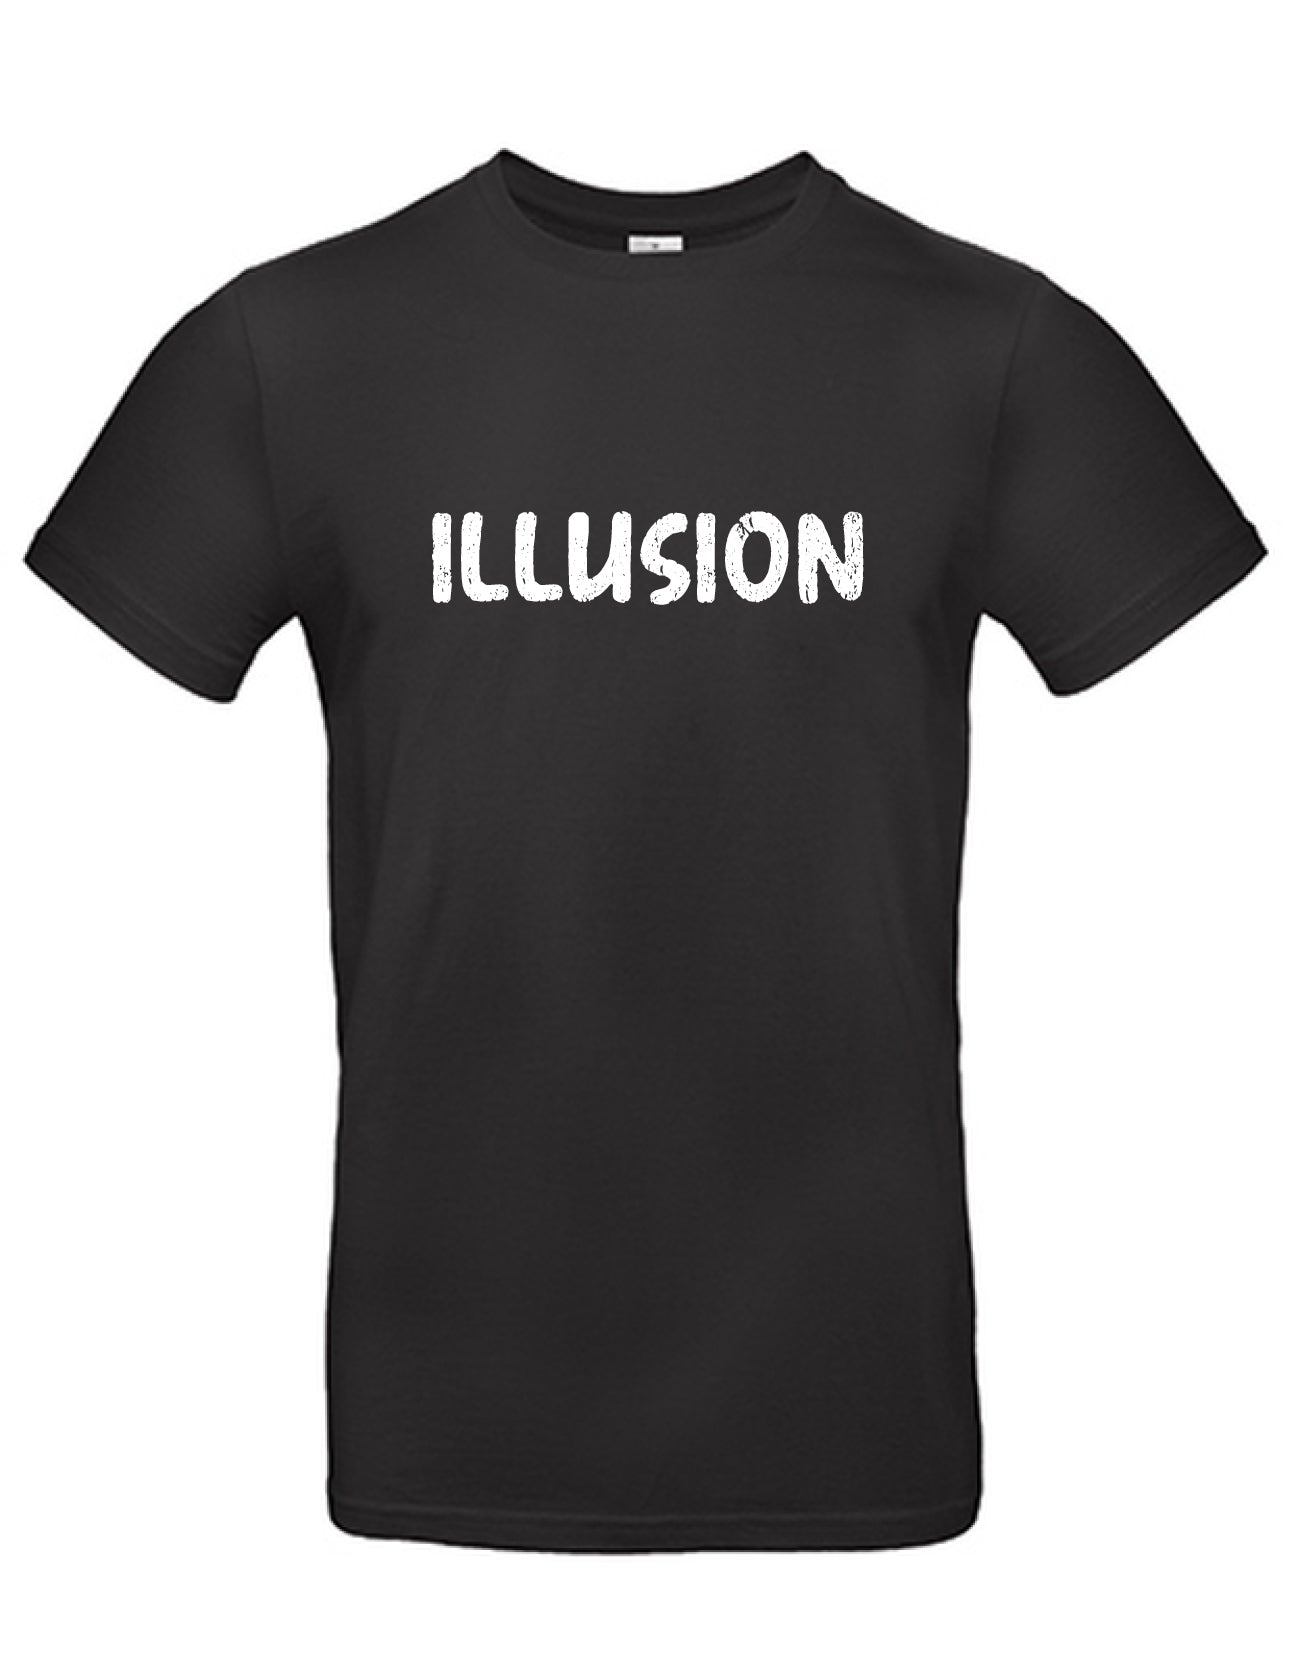 T-Shirt Männer >> ILLUSION